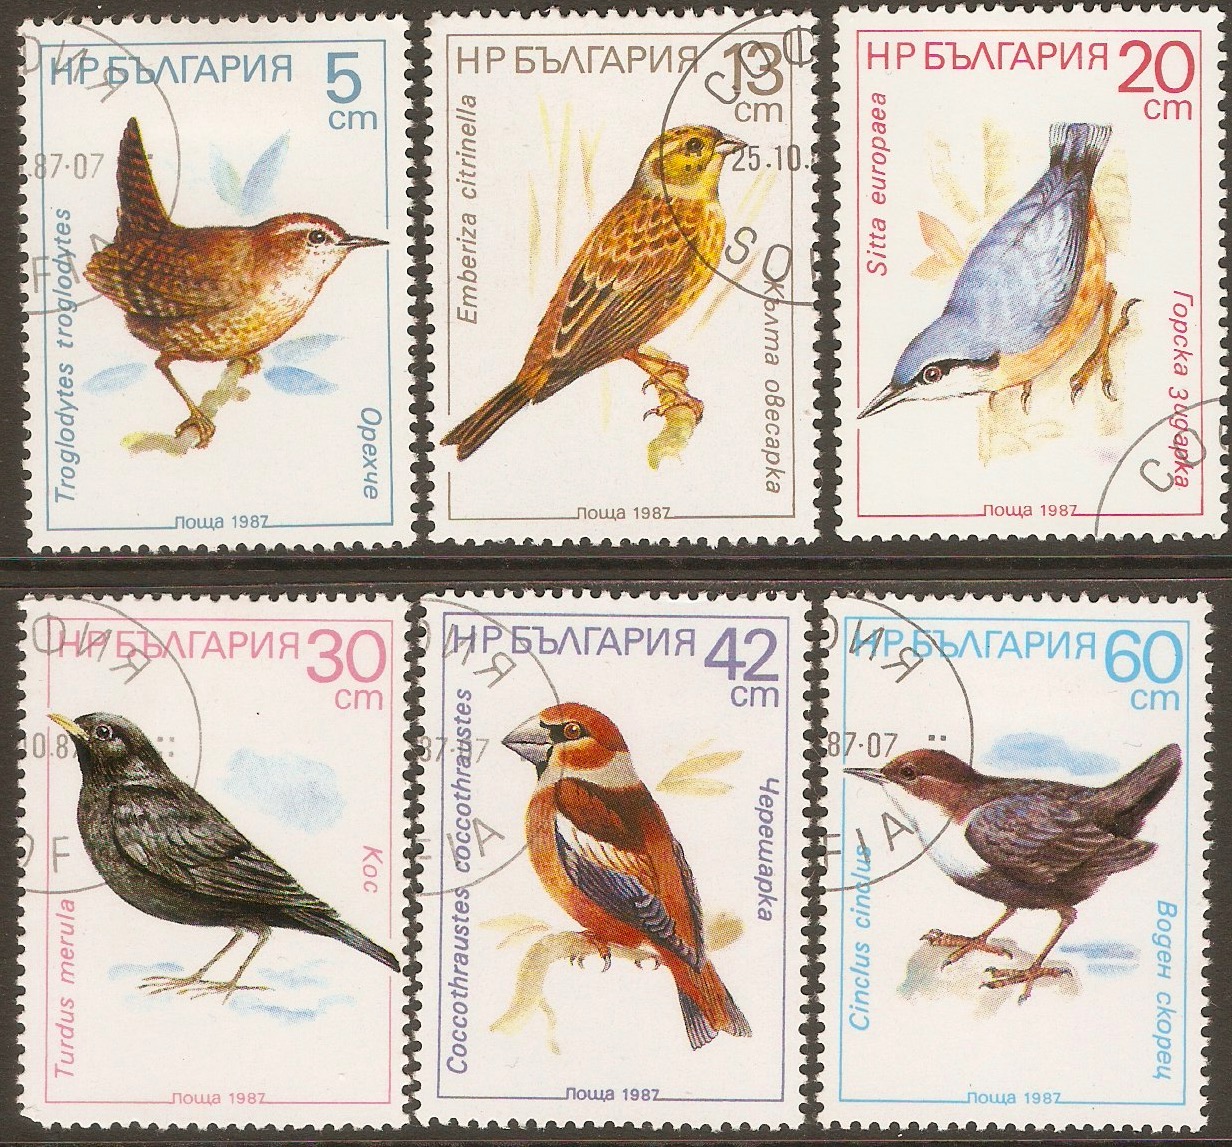 Bulgaria 1987 Birds set. SG3466-SG3471.